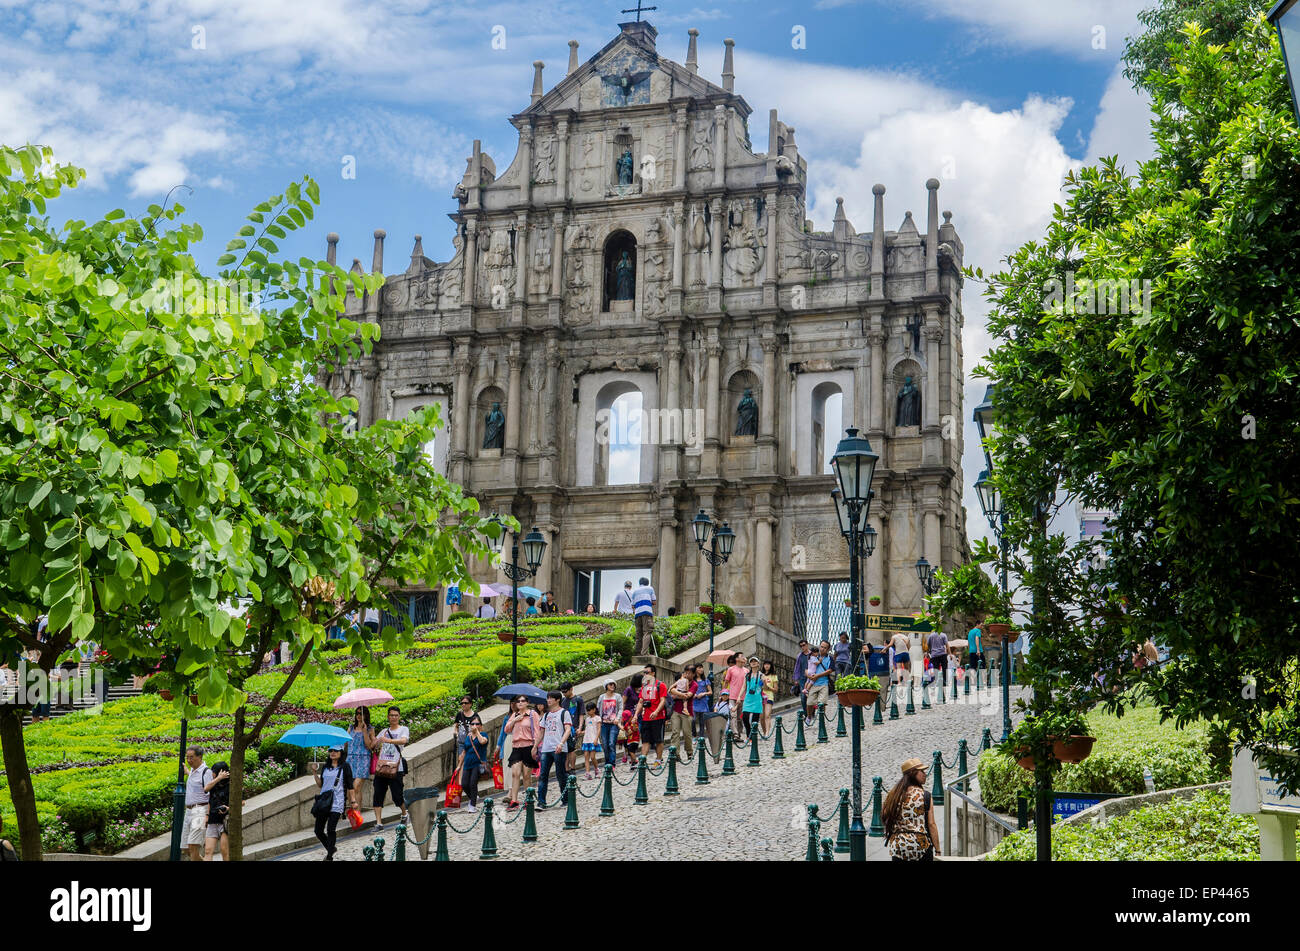 Ruine de l'église de Sao Paulo, vieille ville de Macao, Chine Banque D'Images